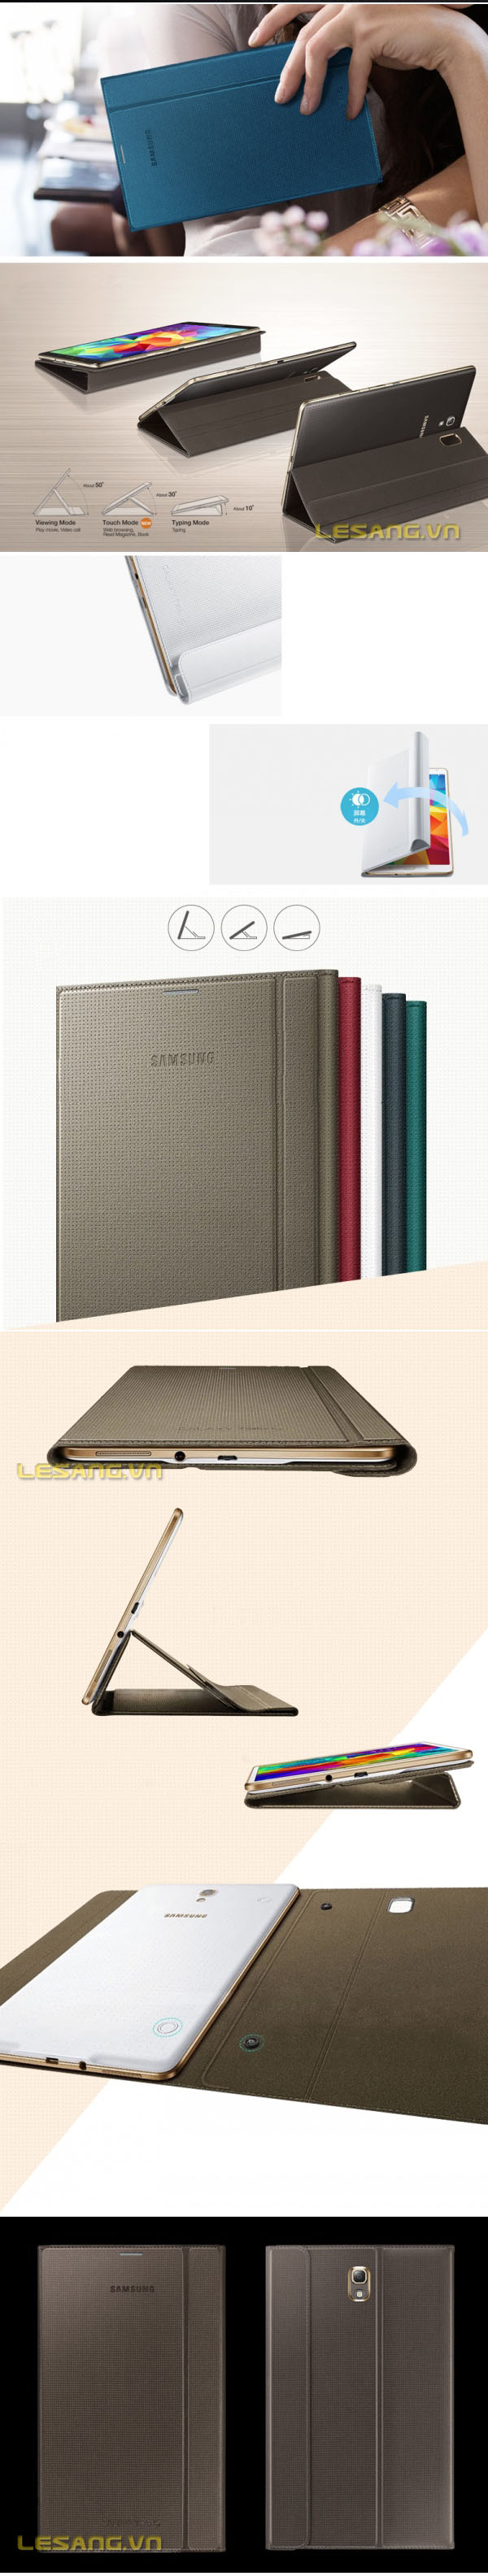 Bao da Galaxy Tab S 8.4 Book Cover chính hãng 32